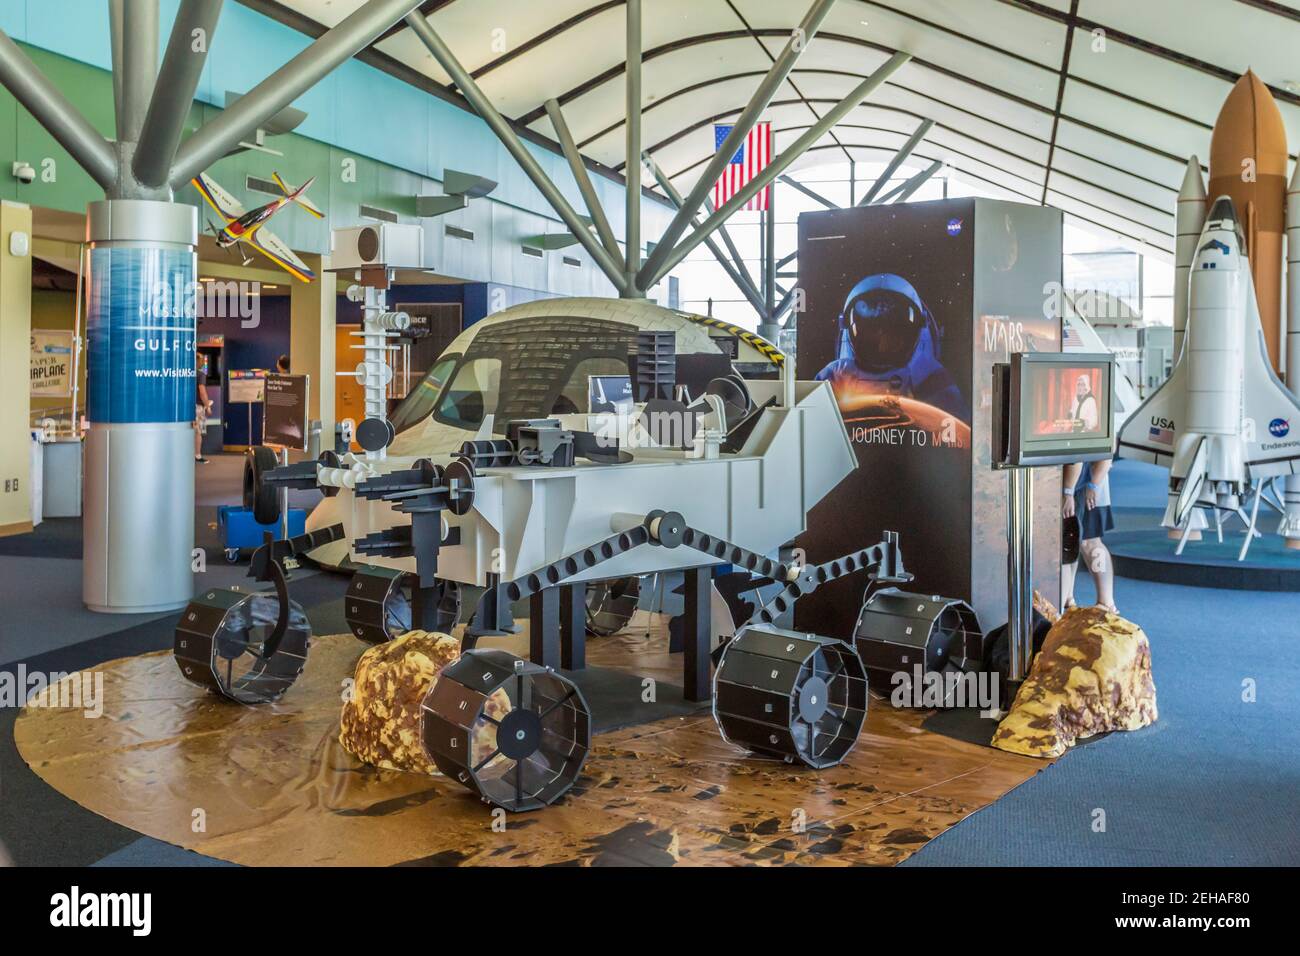 Concept Mars rover exposición de vehículos dentro del Infinity Science Center en el John C. Stennis Space Center, en Hamock County Mississippi Foto de stock